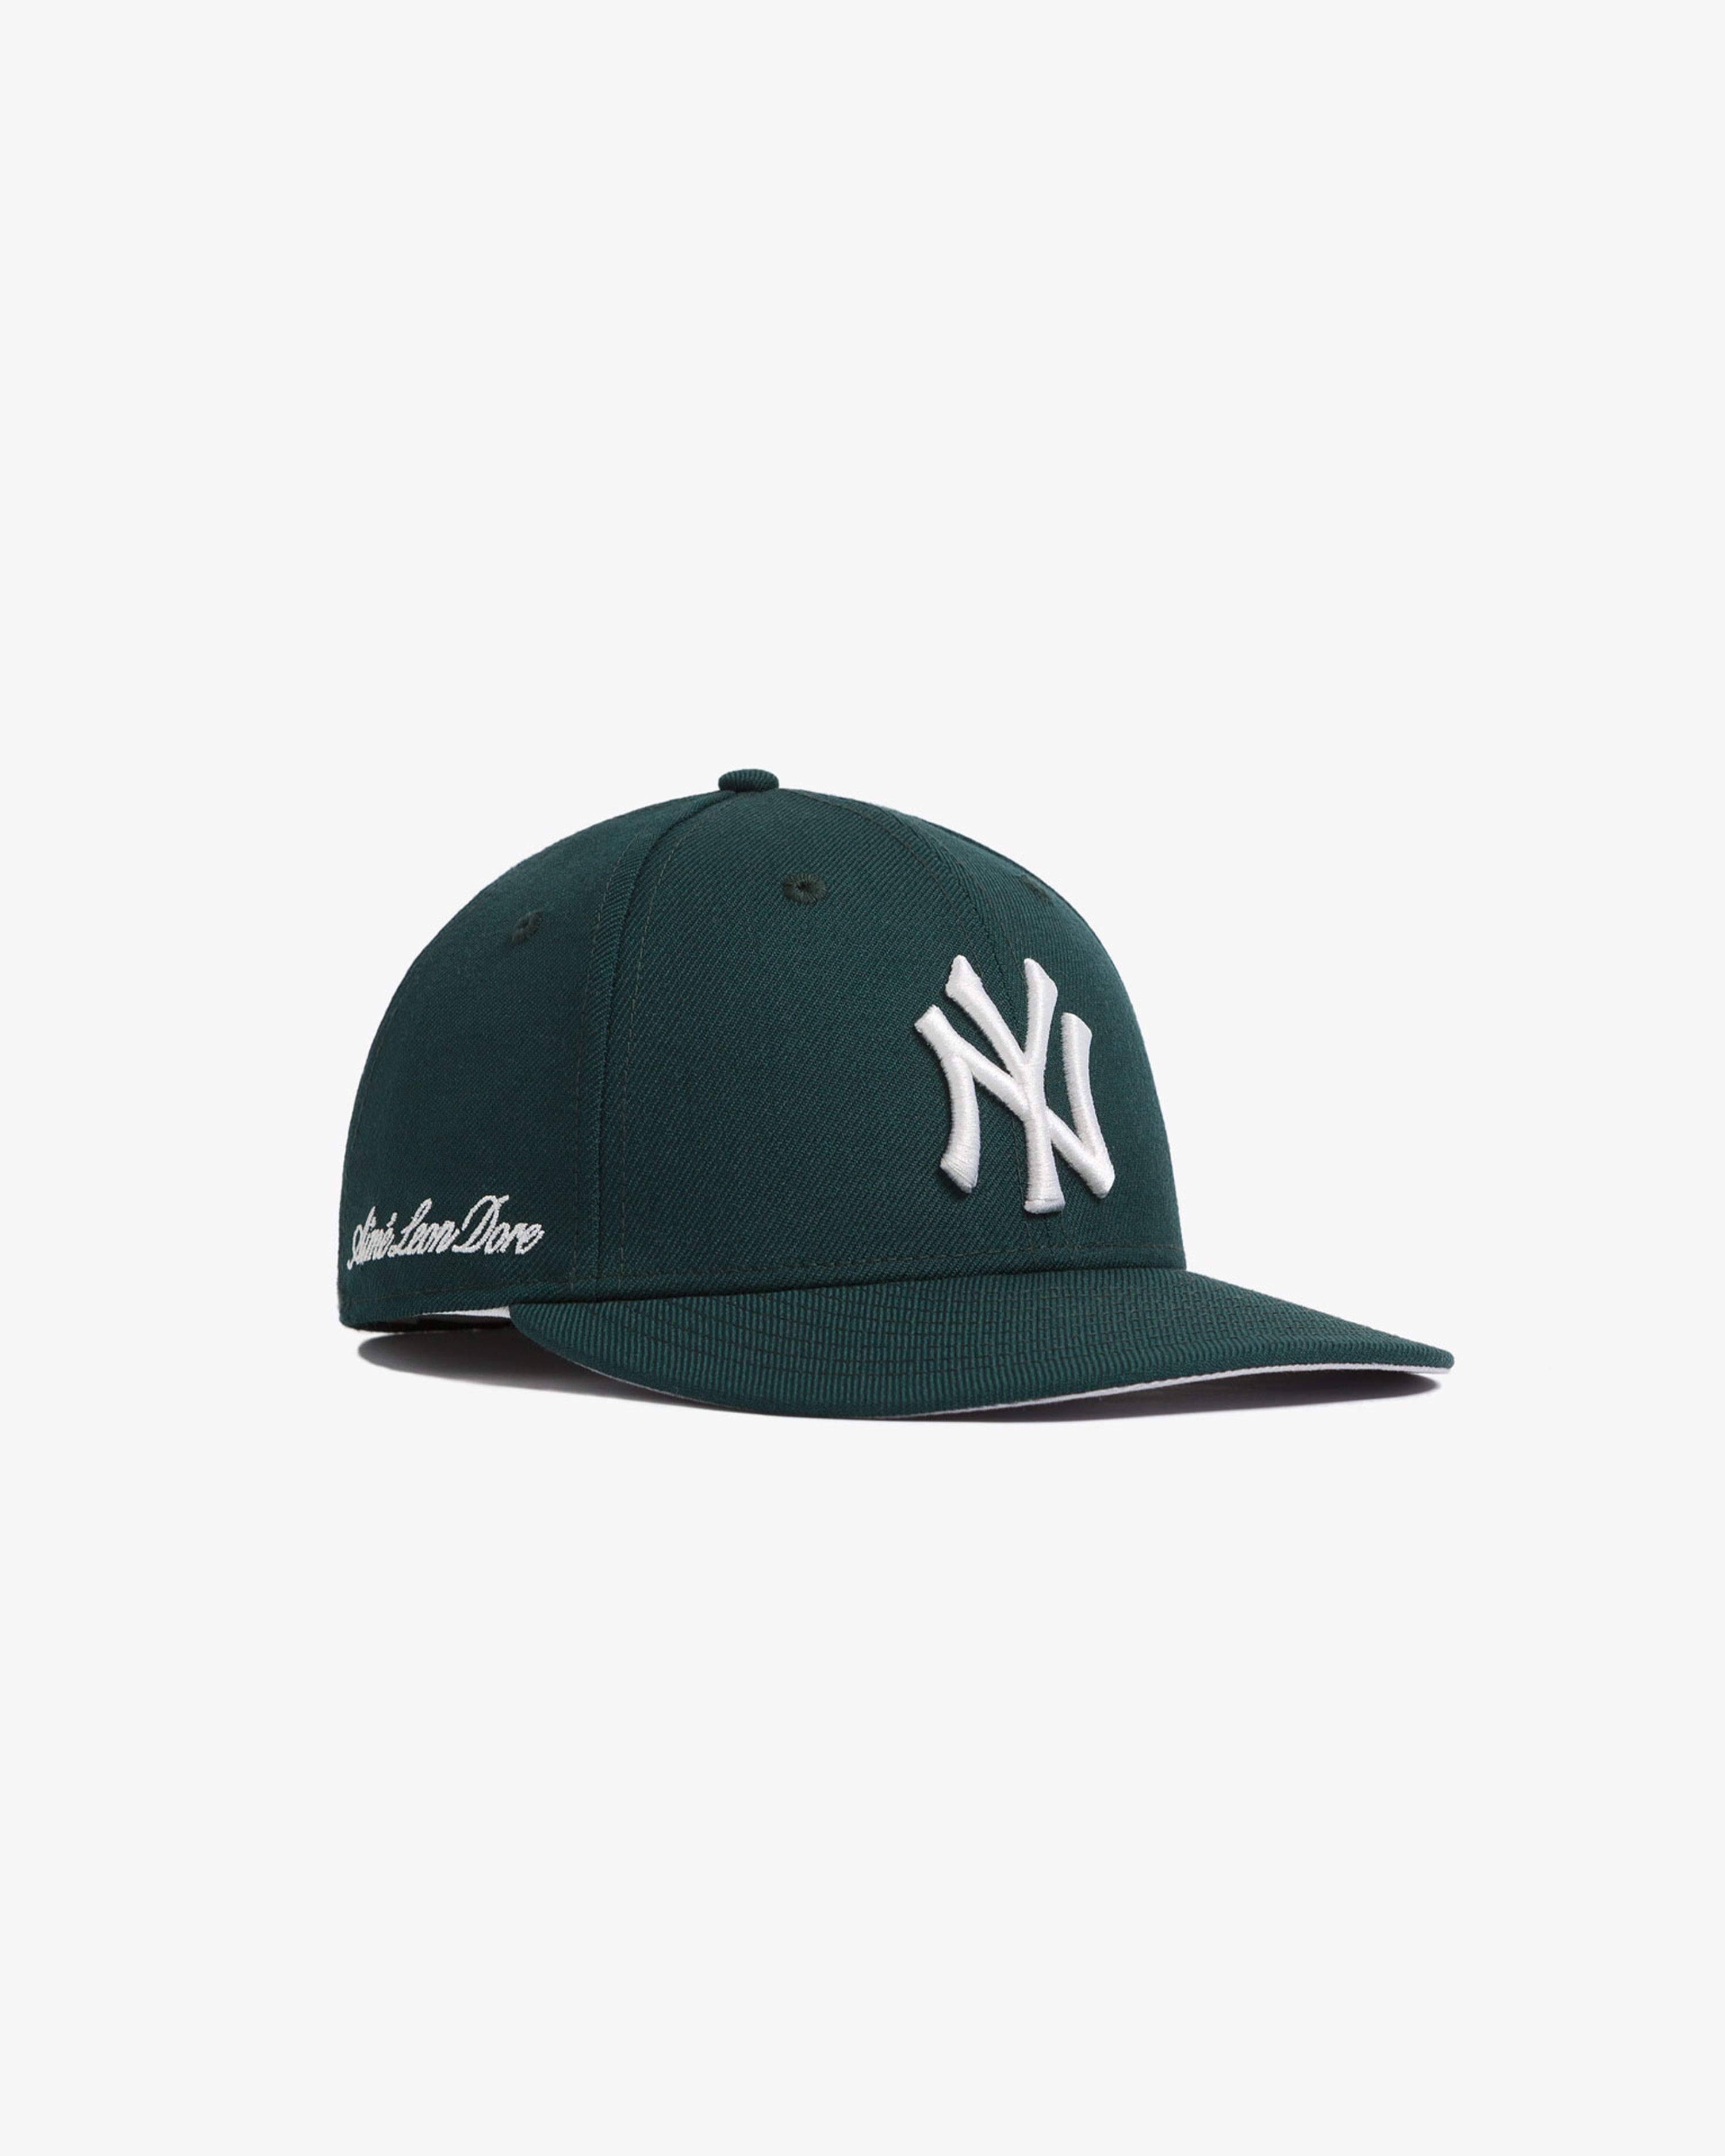 New York Yankees Cap - American League (AL) - Chris Creamer's